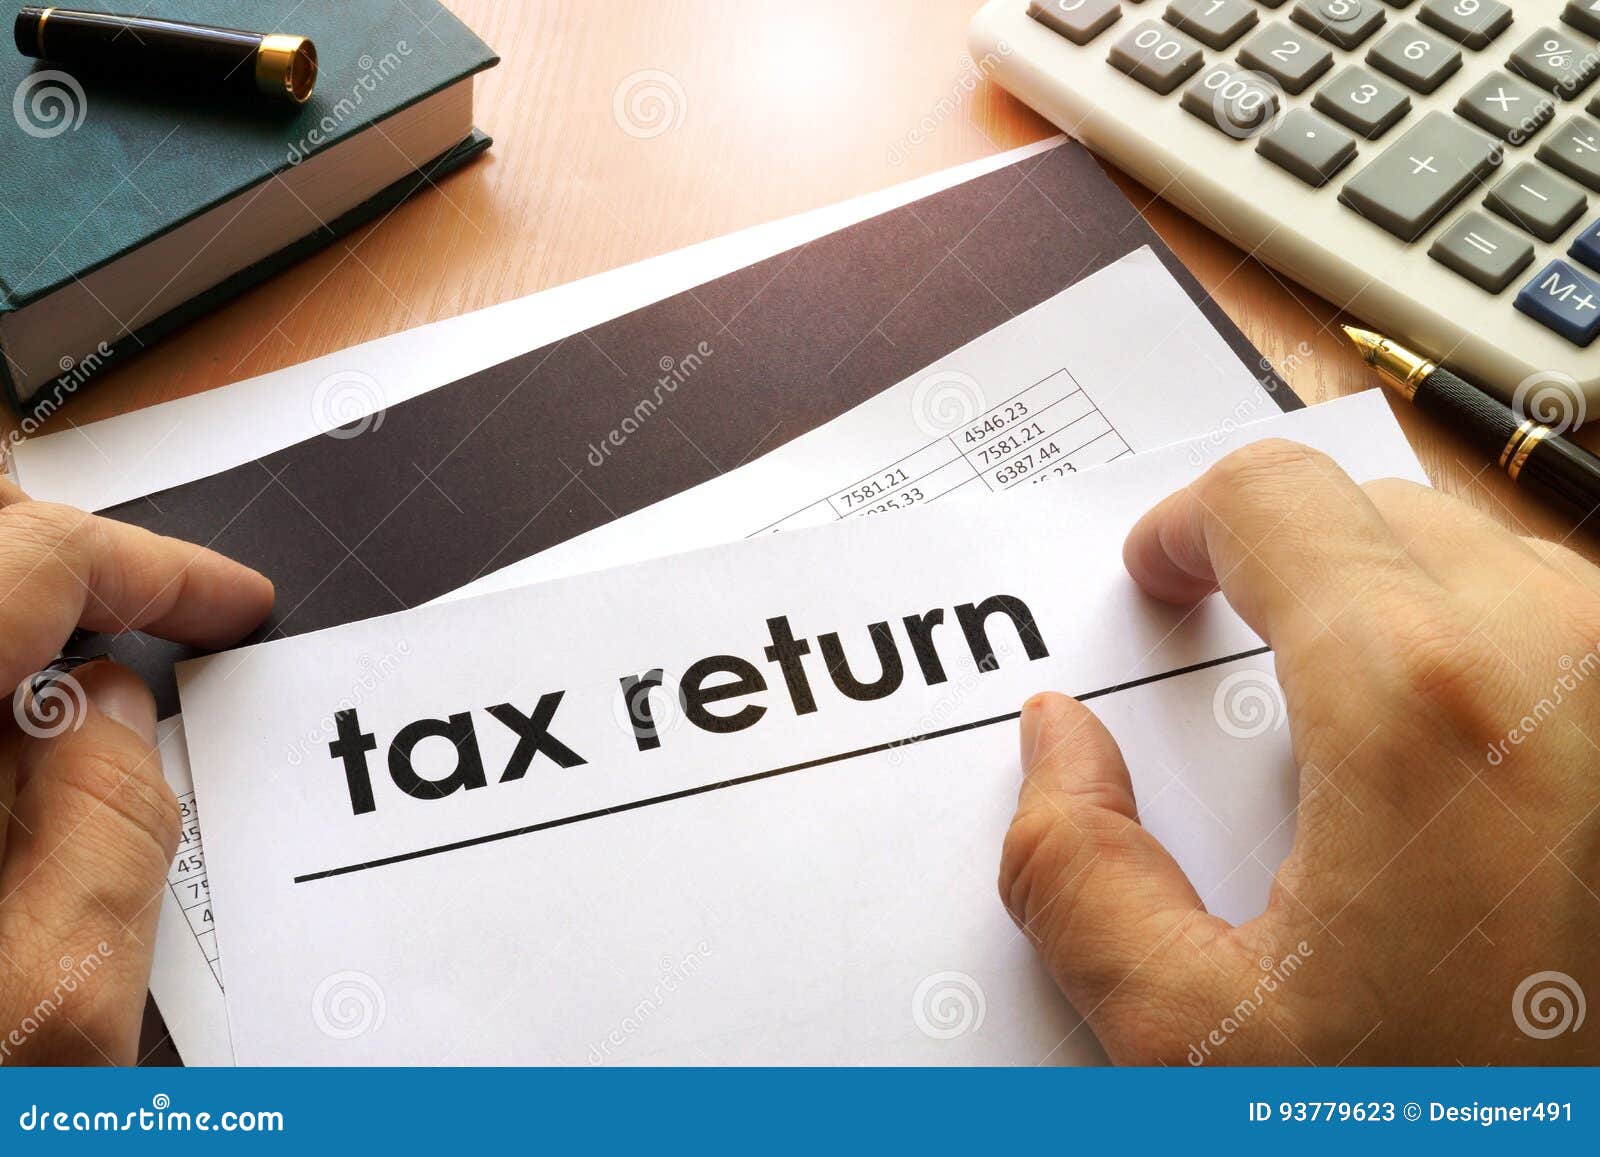 tax return.